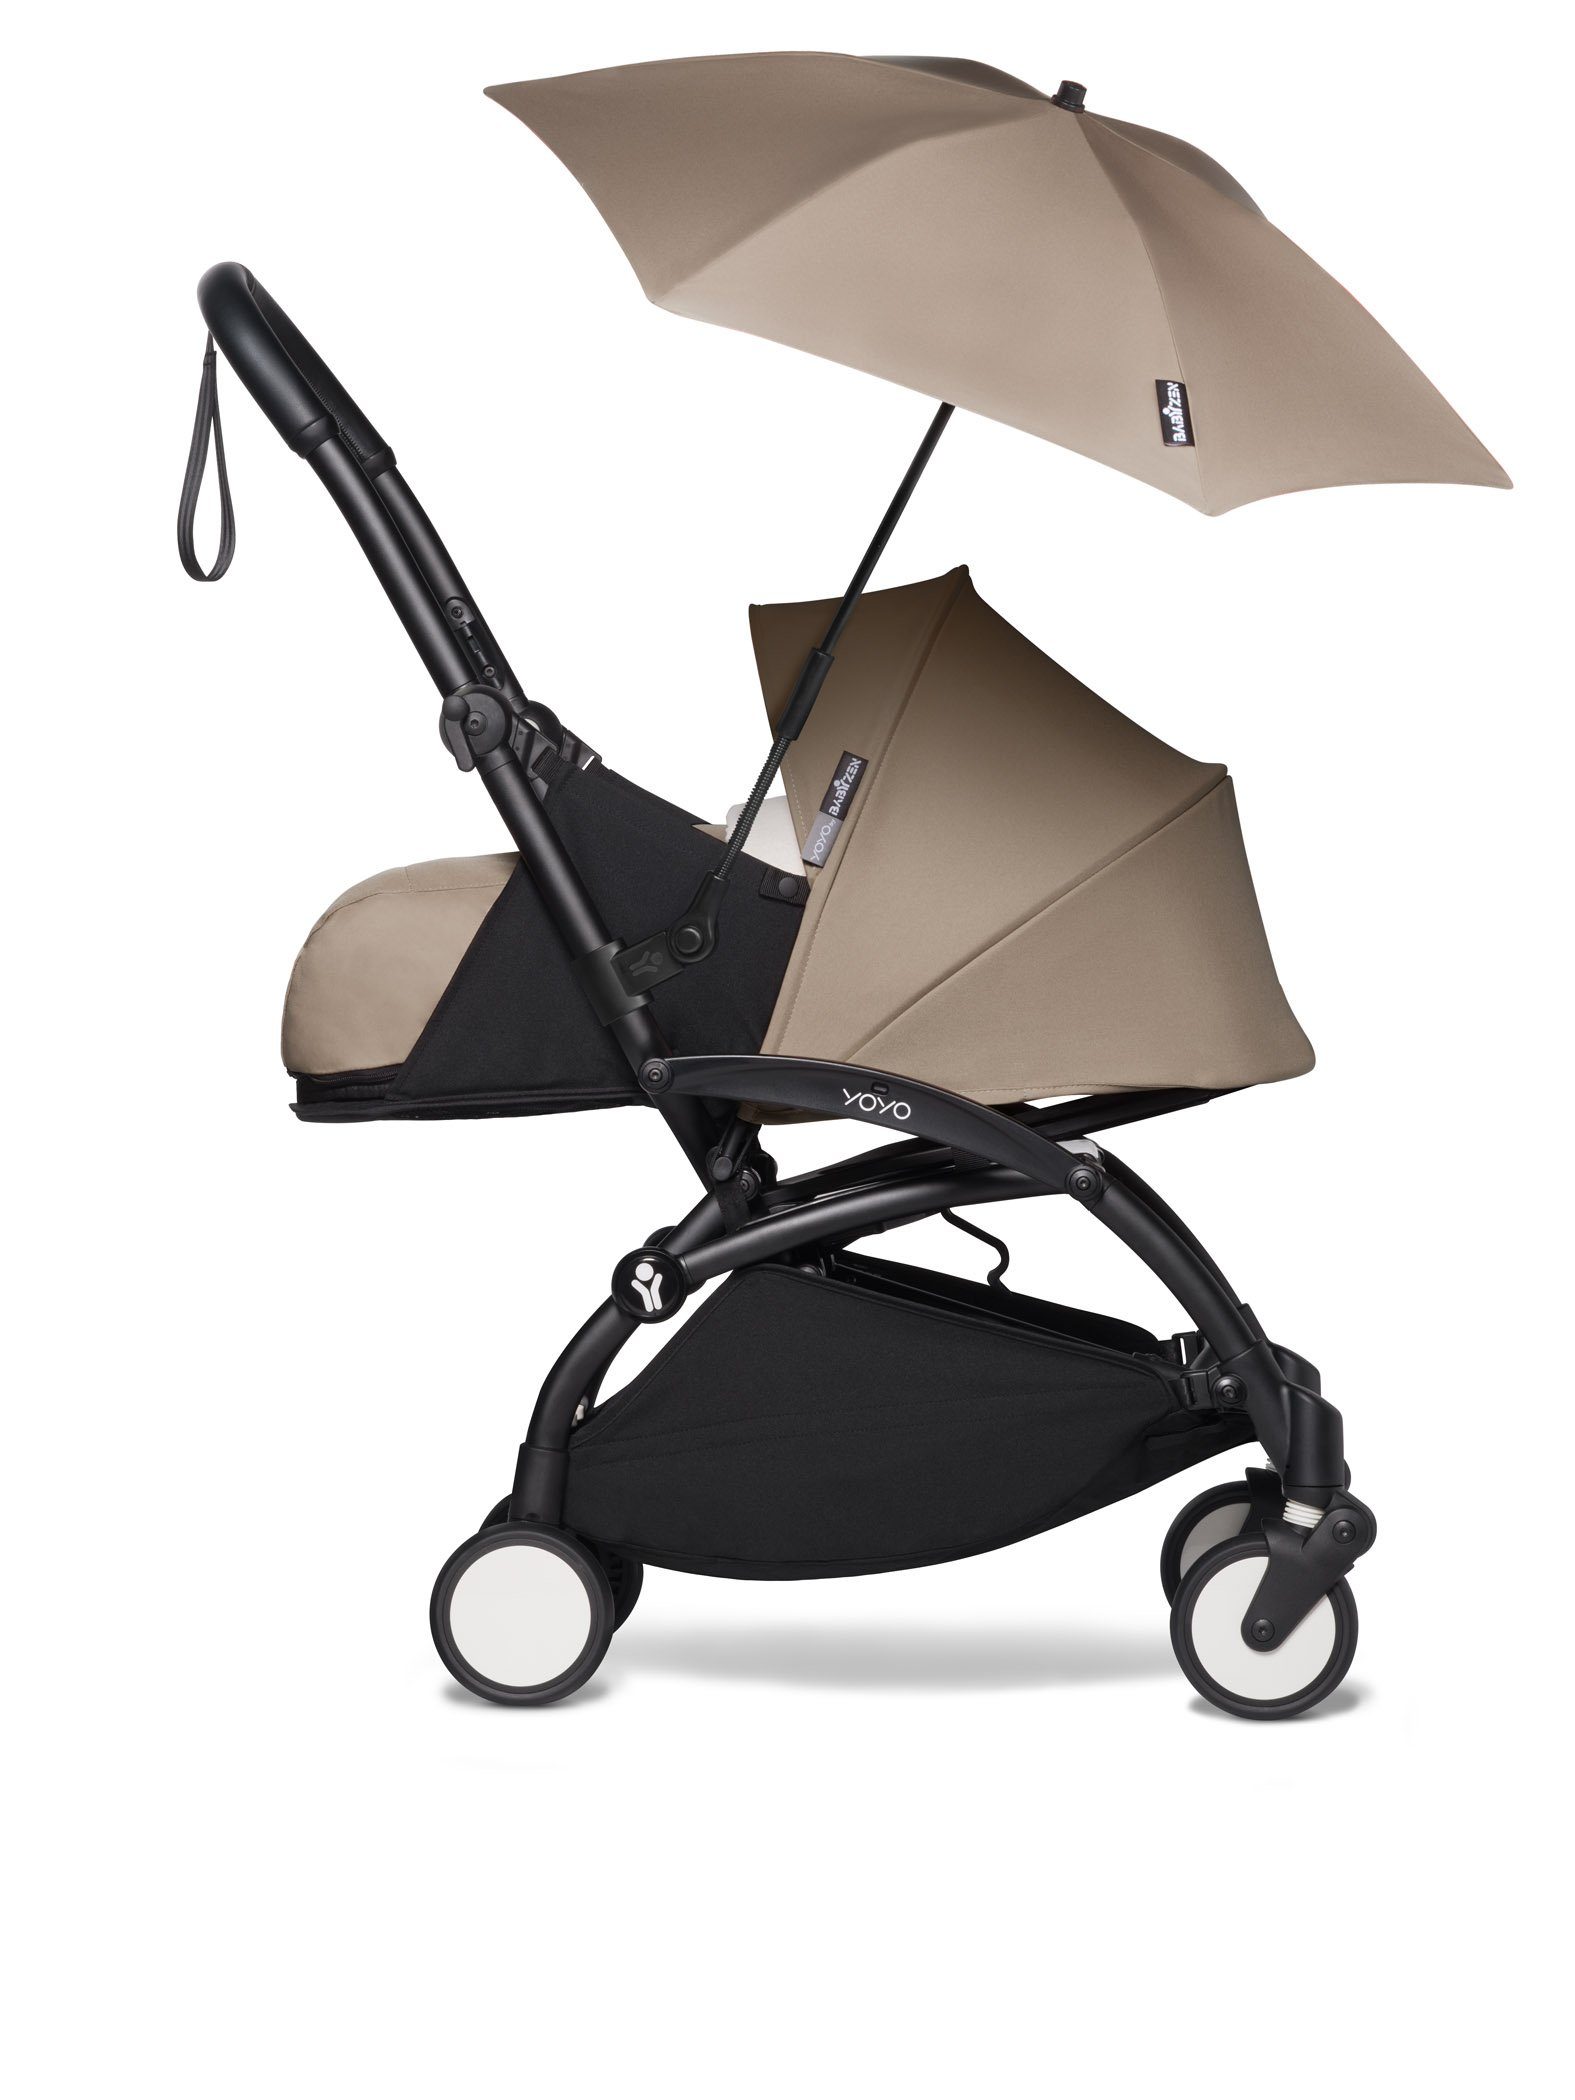 das Sonnenschirm Regenschirm YOYO BABYZEN Taupe / Kinderwagenschirm für Gestell